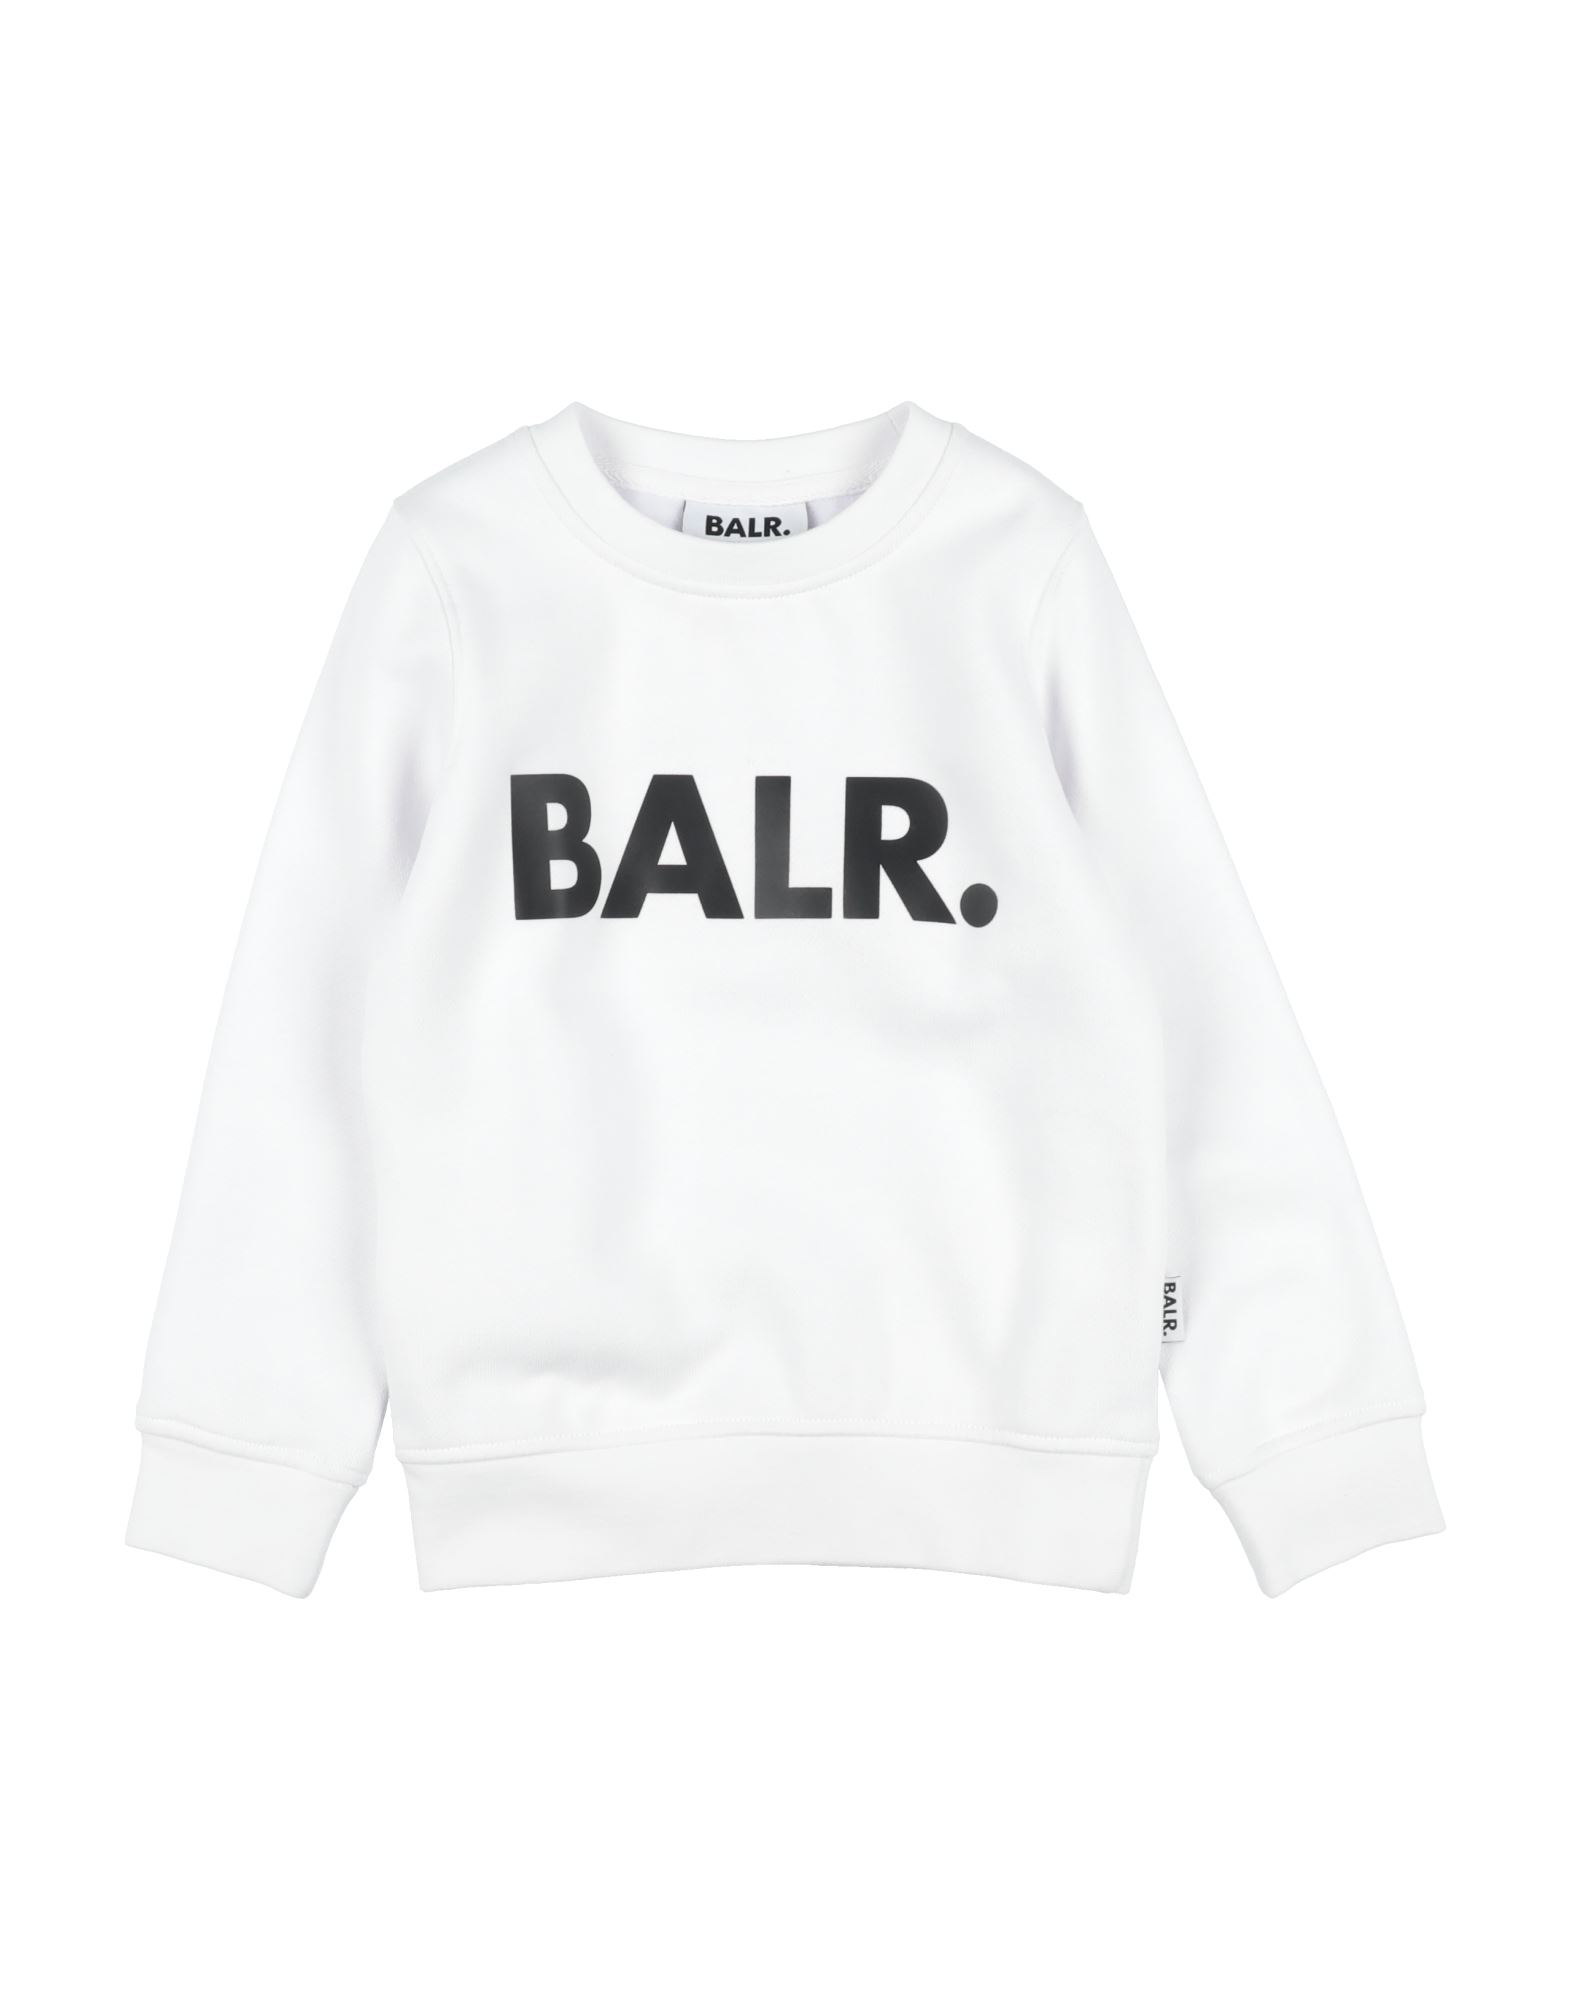 Balr. Kids'  Sweatshirts In White